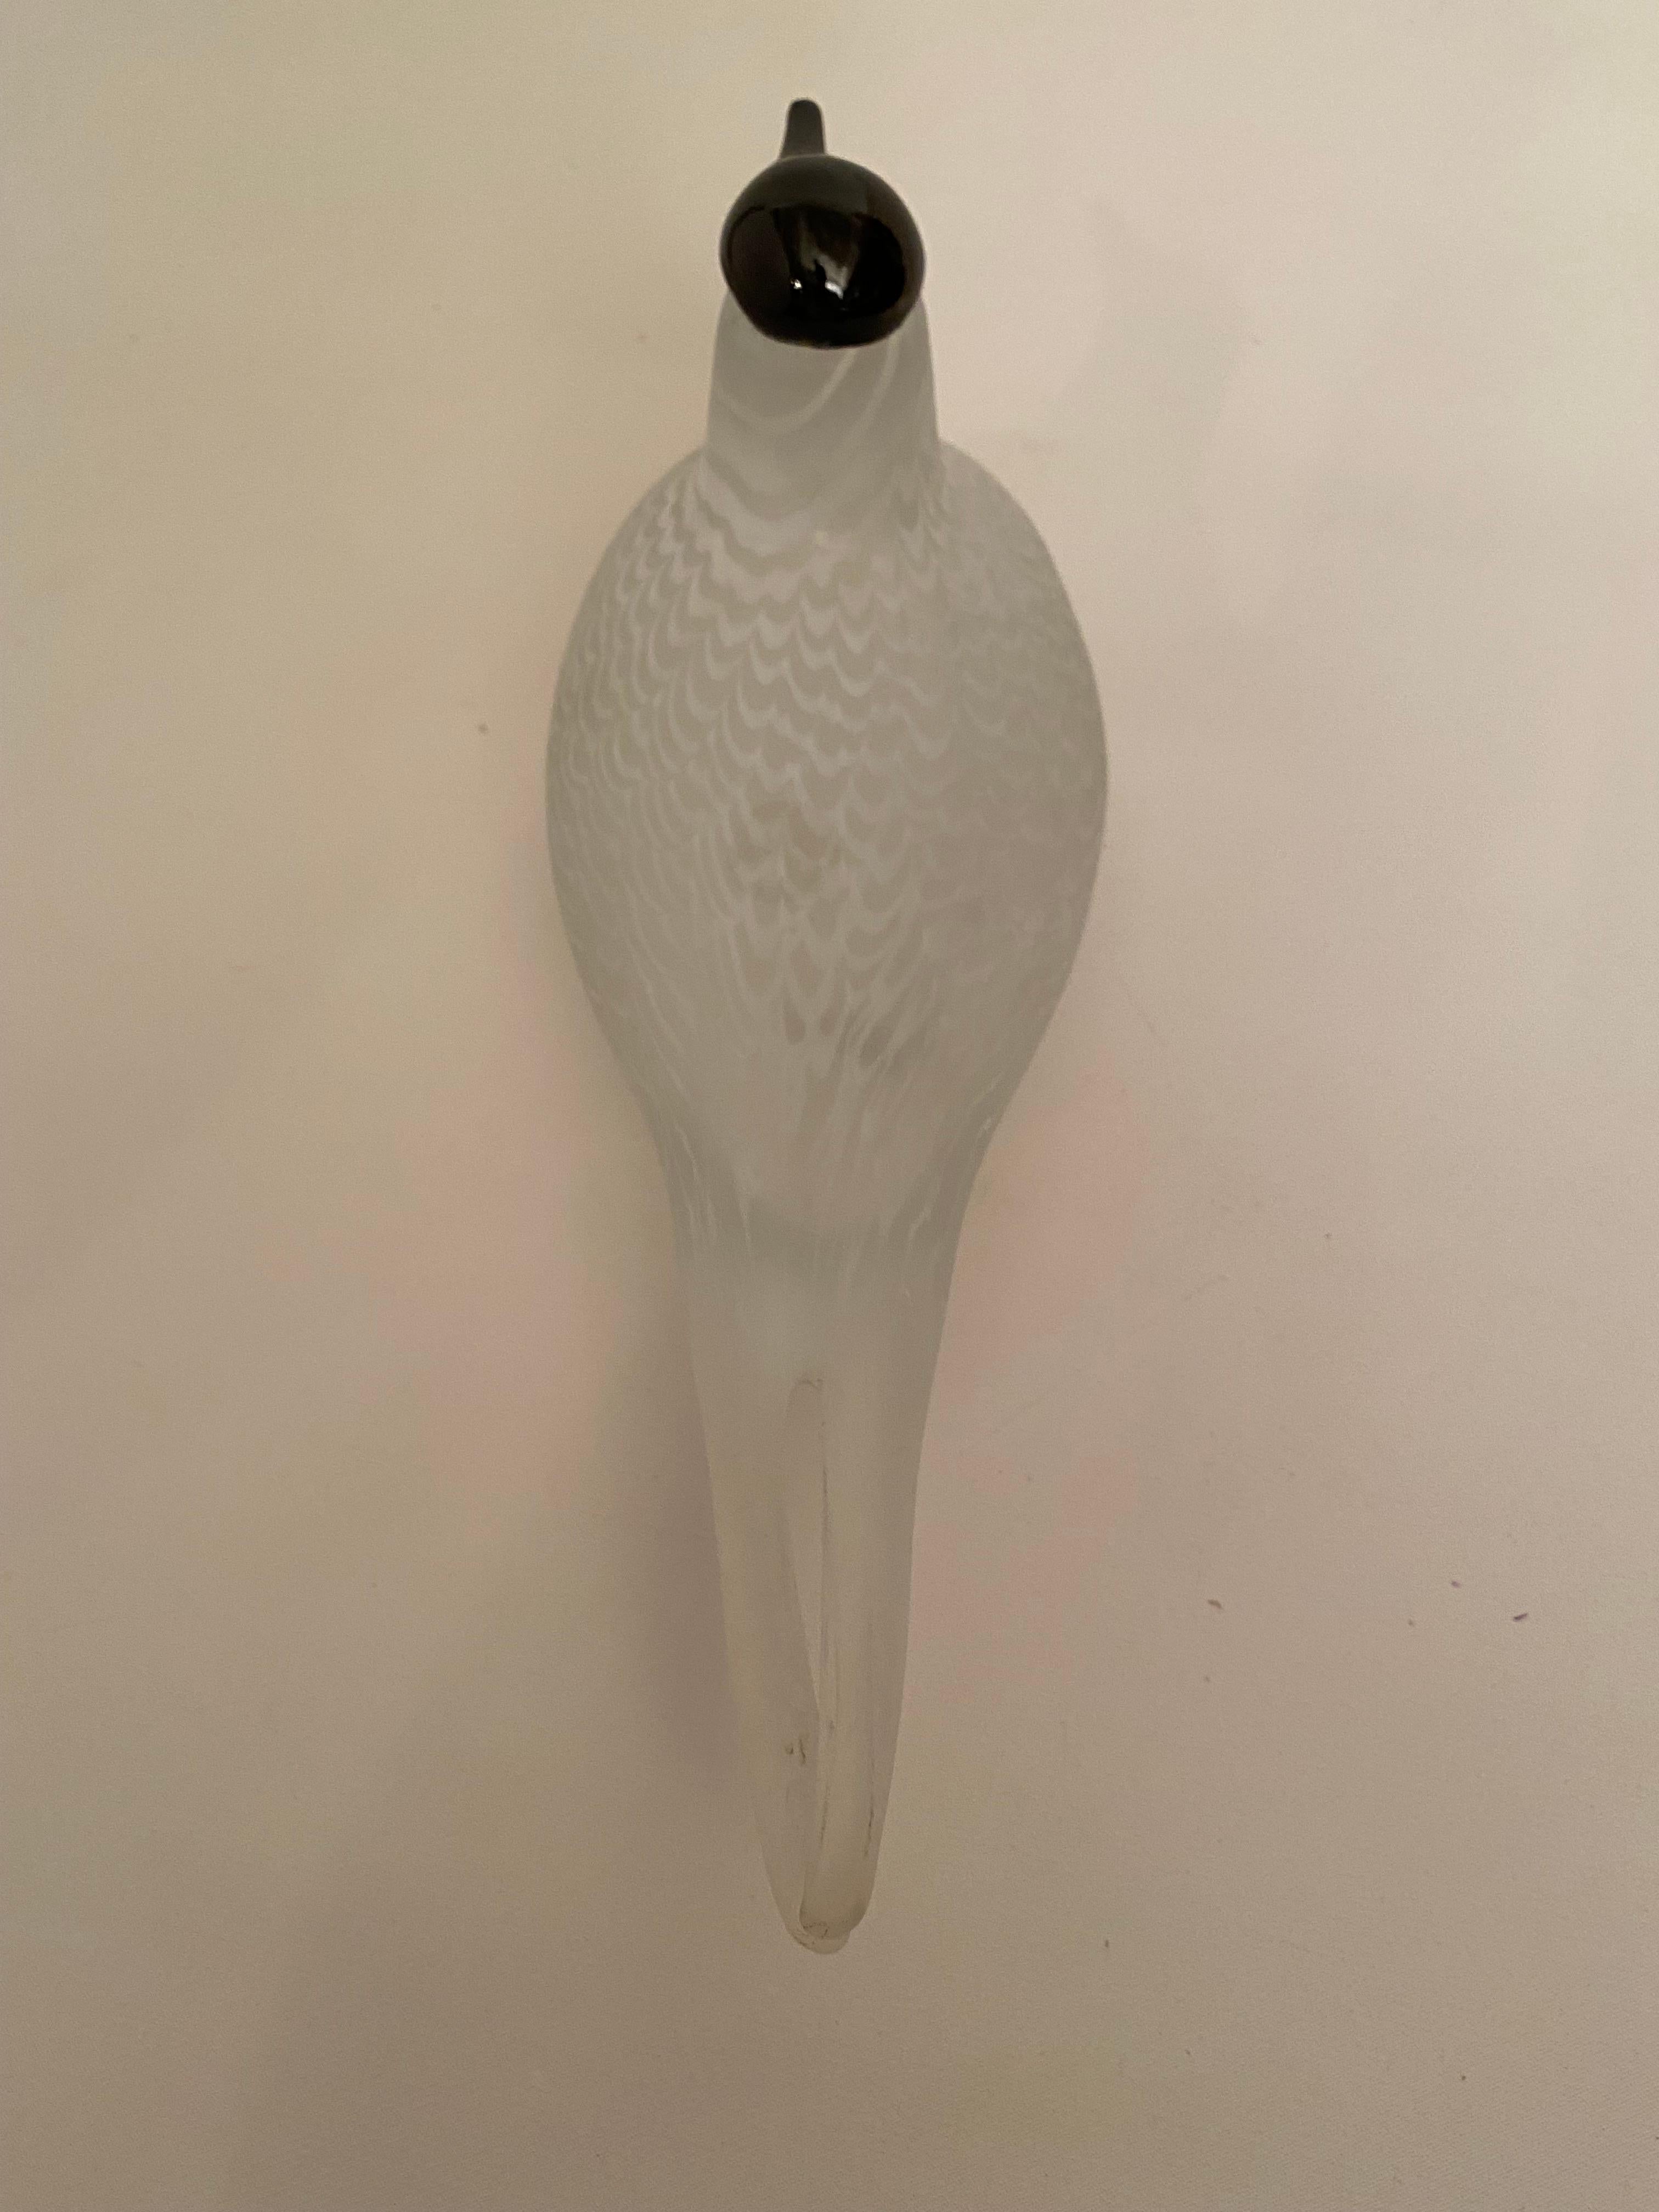 Art Glass Oiva Toikka Nuutajarvi Notsjo Glass Bird Sculpture